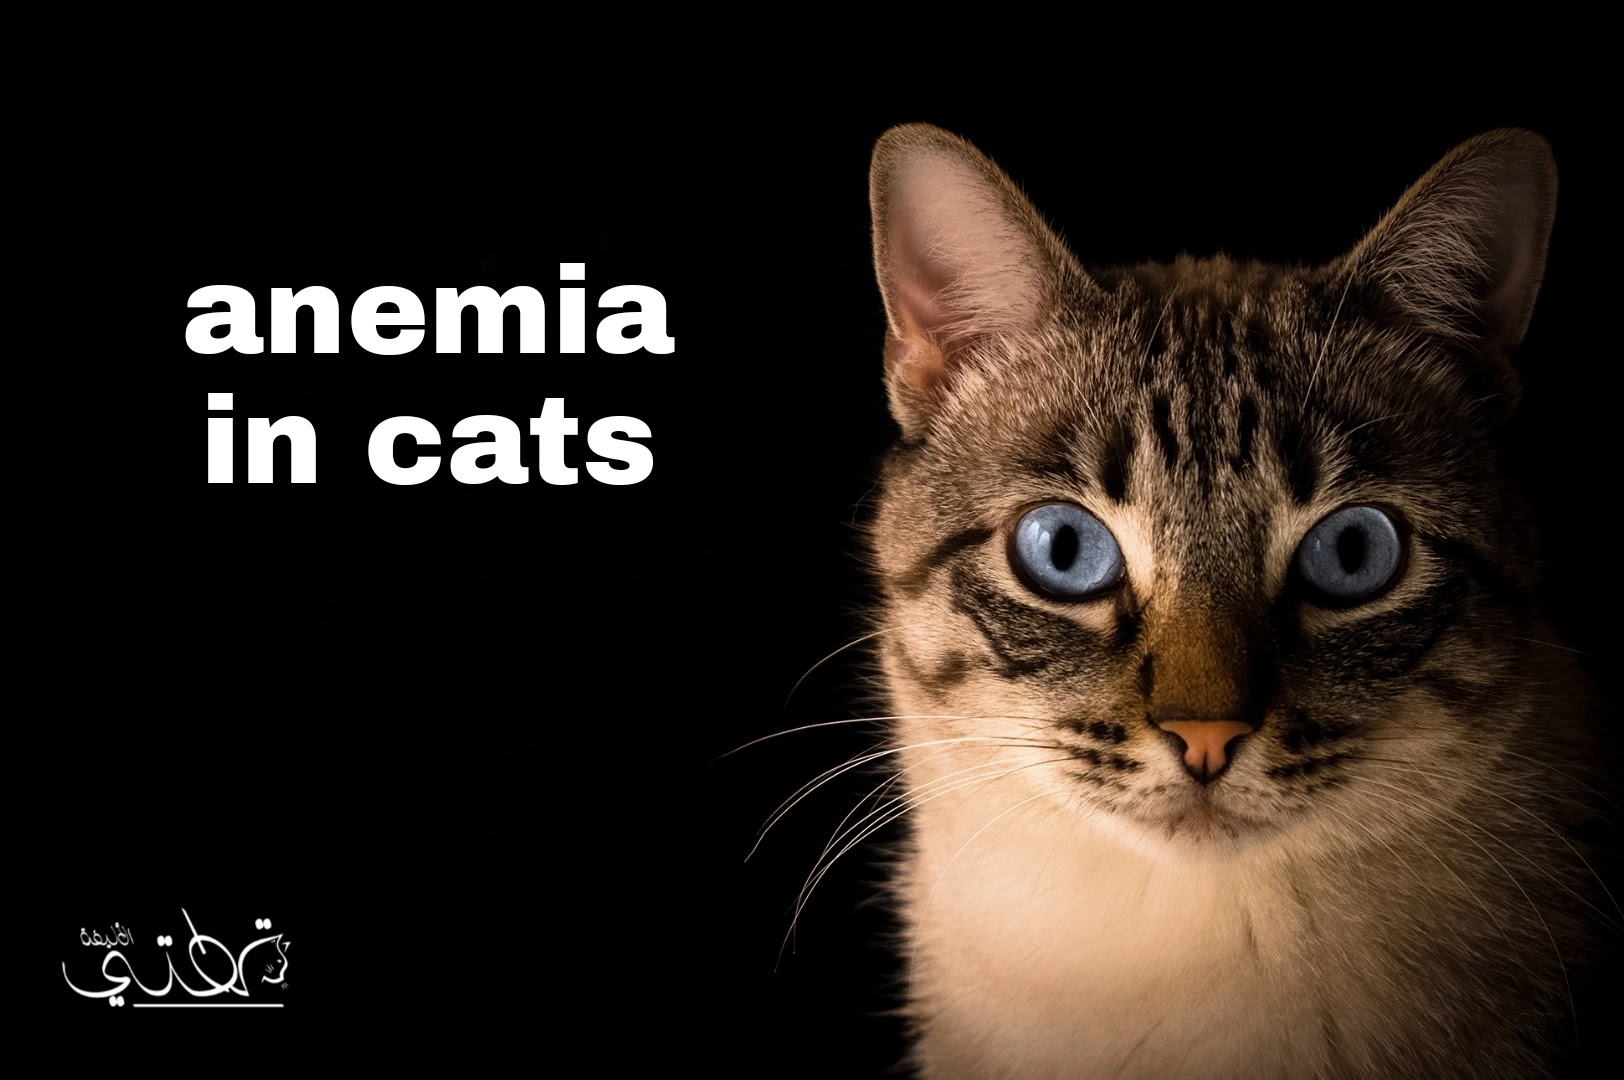 أنواع وأسباب فقر الدم في القطط وكيفية منعه والوقاية منه